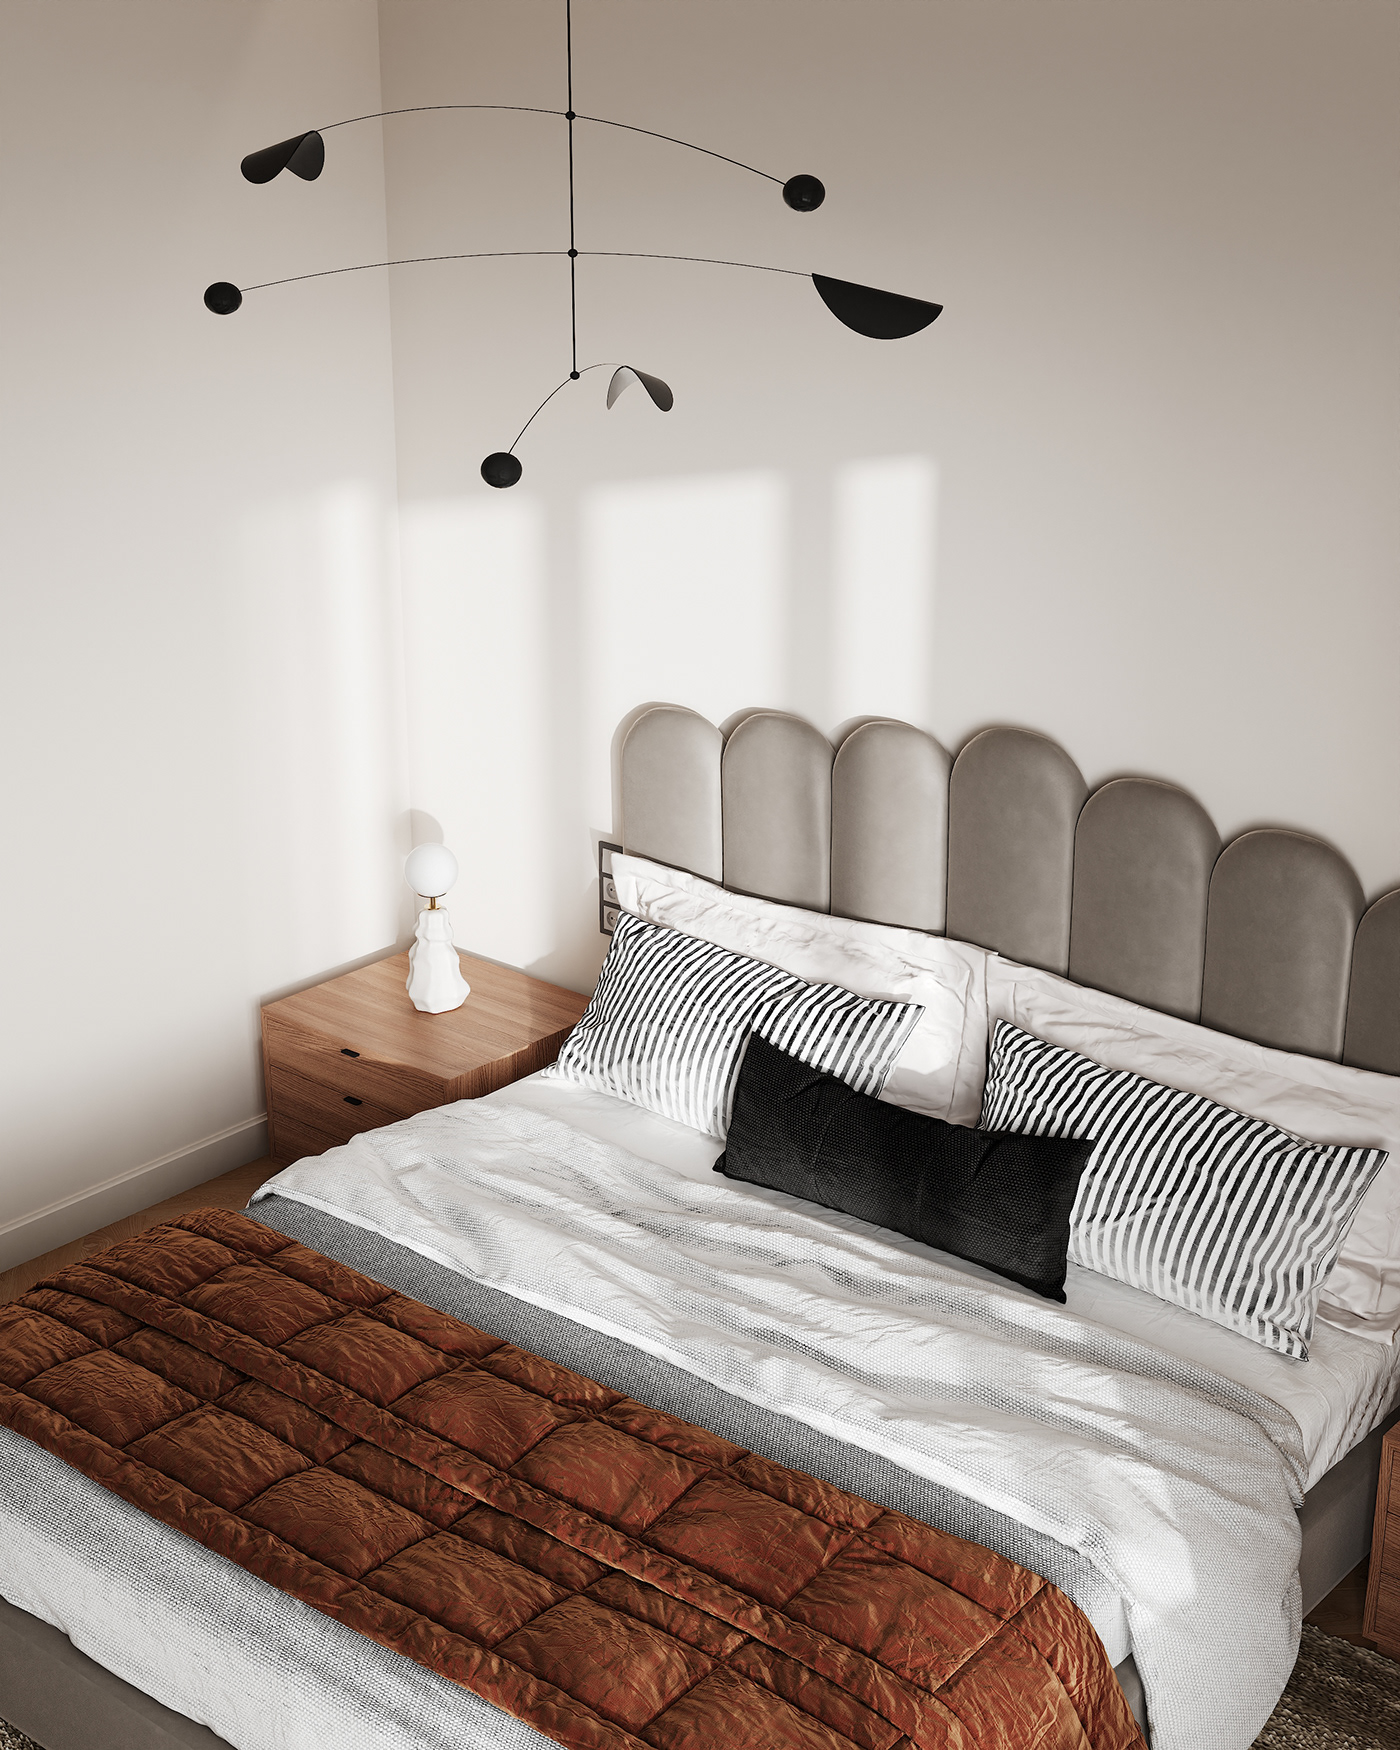 3ds max architecture bedroom corona interior design  modern